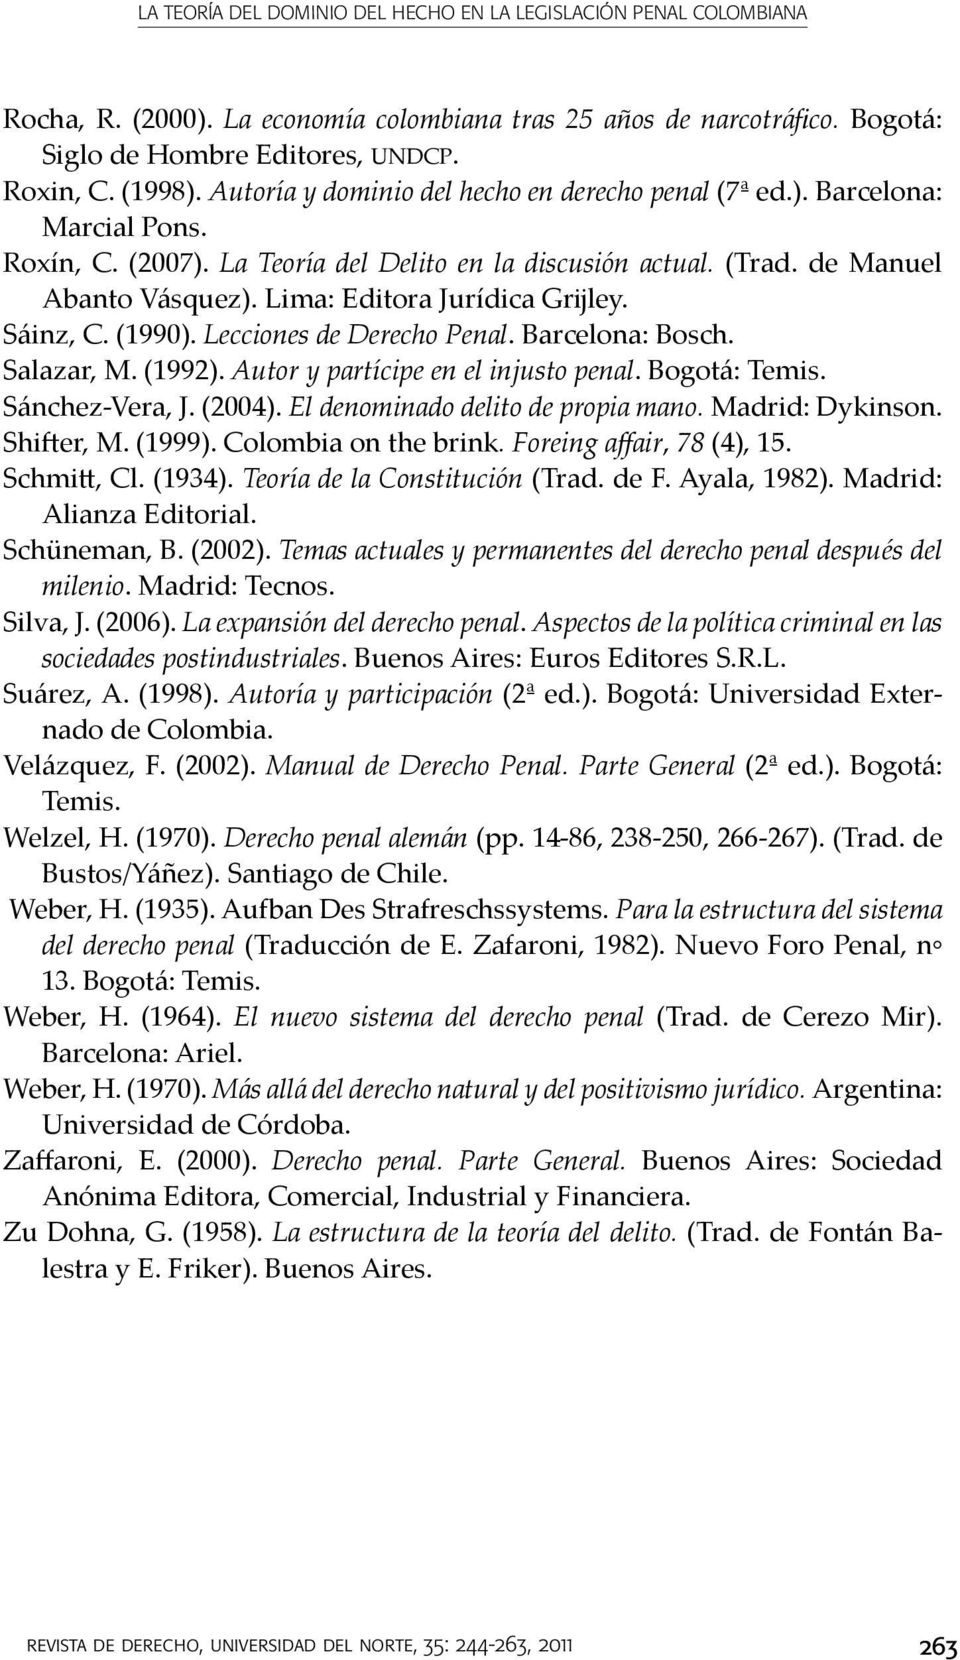 Lima: Editora Jurídica Grijley. Sáinz, C. (1990). Lecciones de Derecho Penal. Barcelona: Bosch. Salazar, M. (1992). Autor y partícipe en el injusto penal. Bogotá: Temis. Sánchez-Vera, J. (2004).